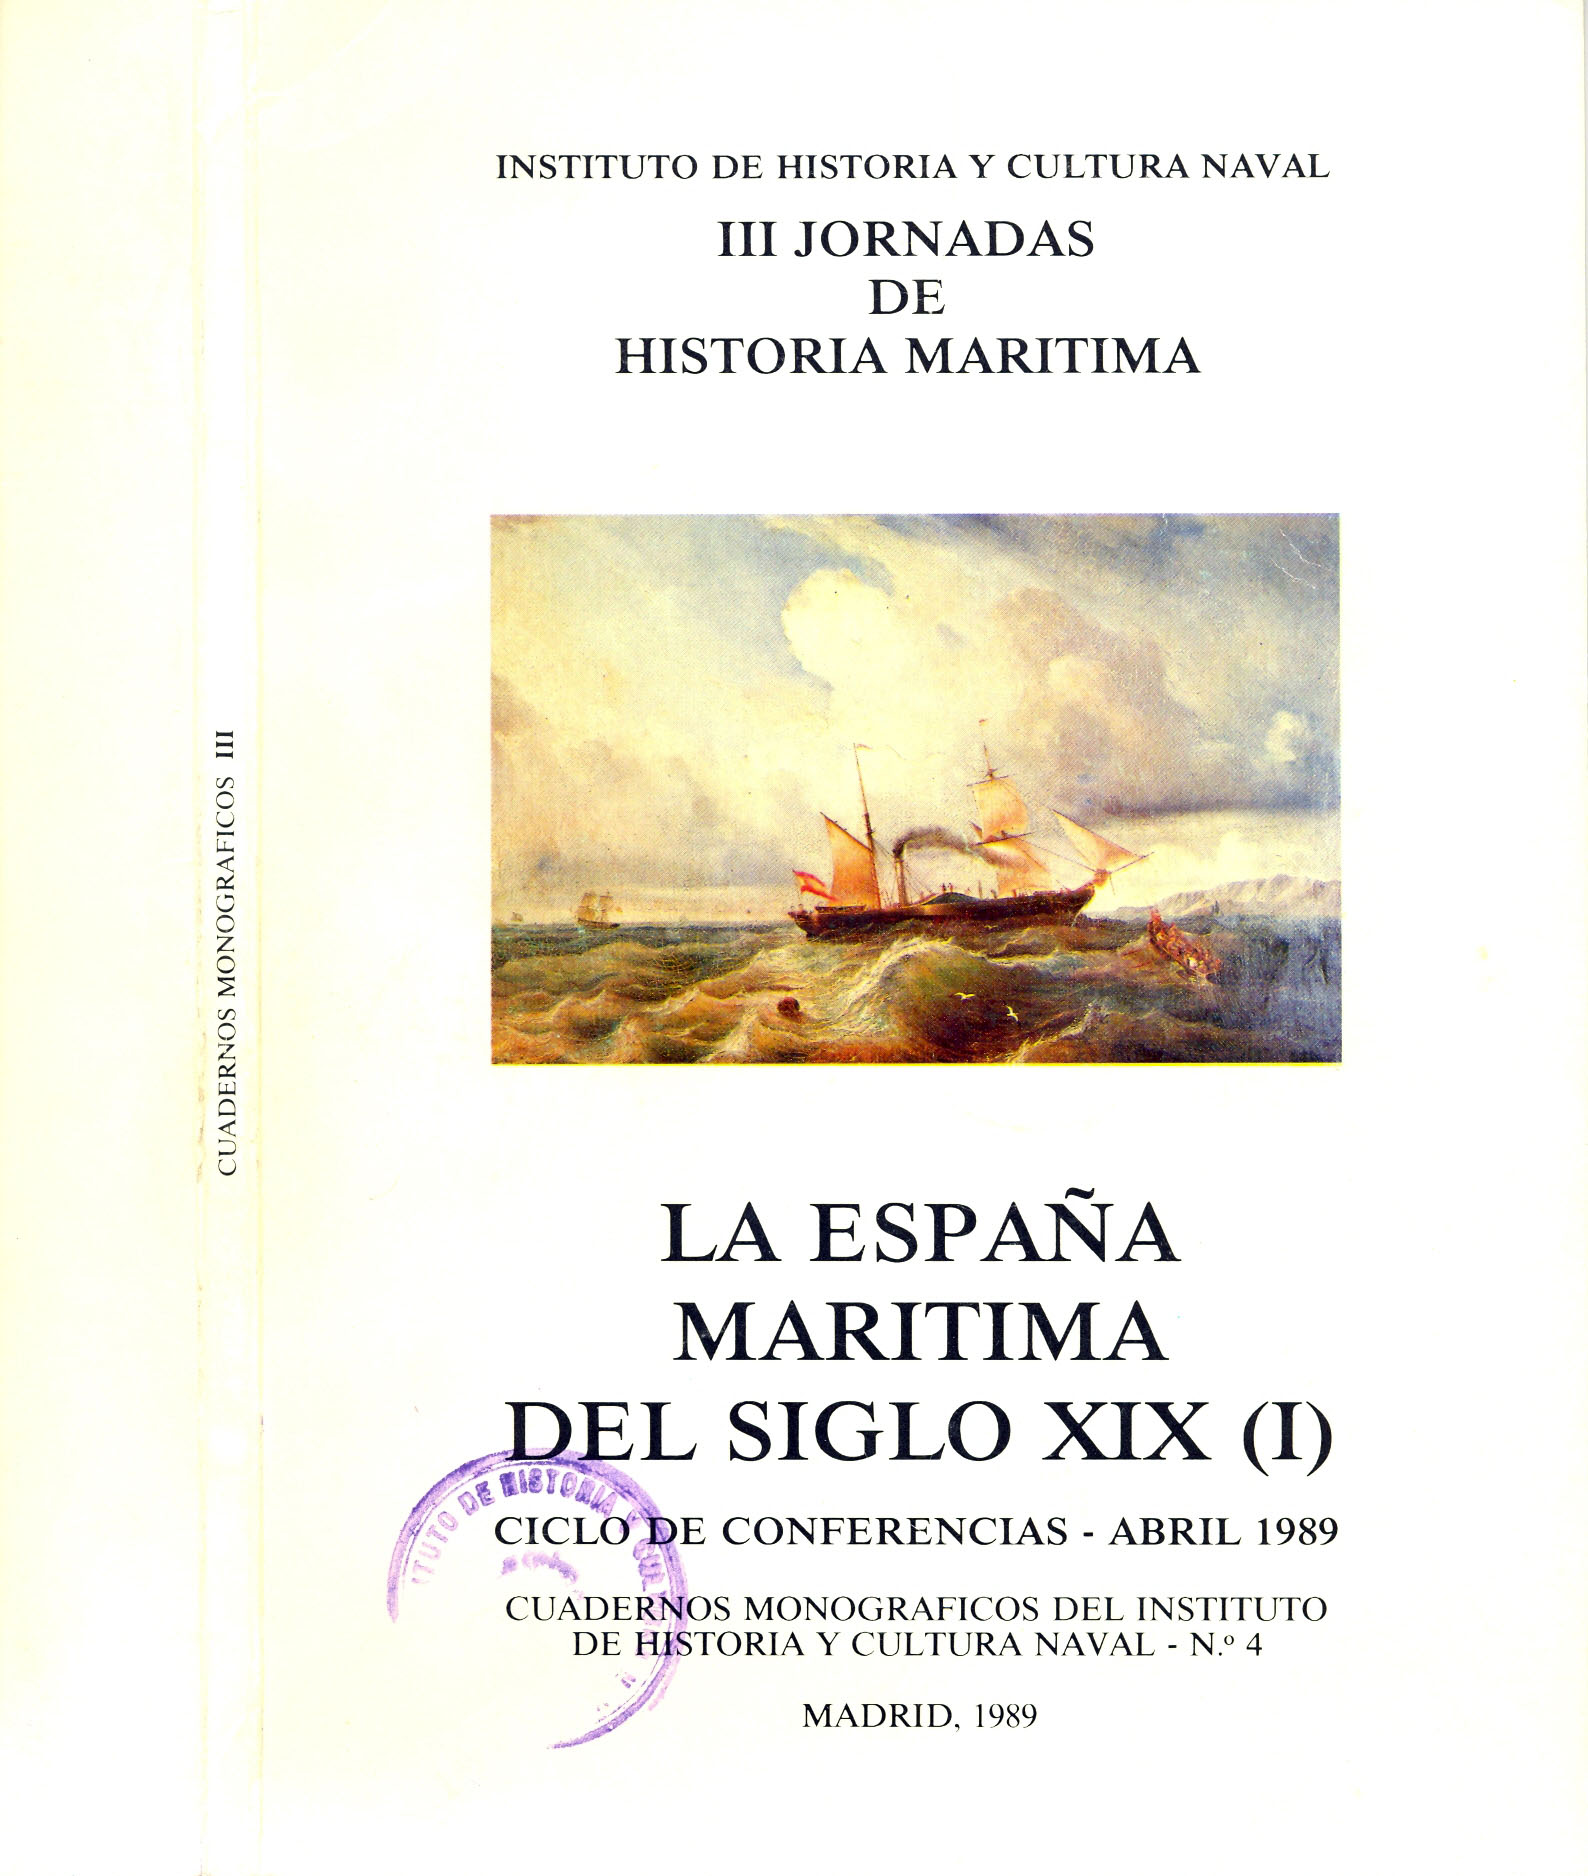 La España marítima del siglo XIX (I)